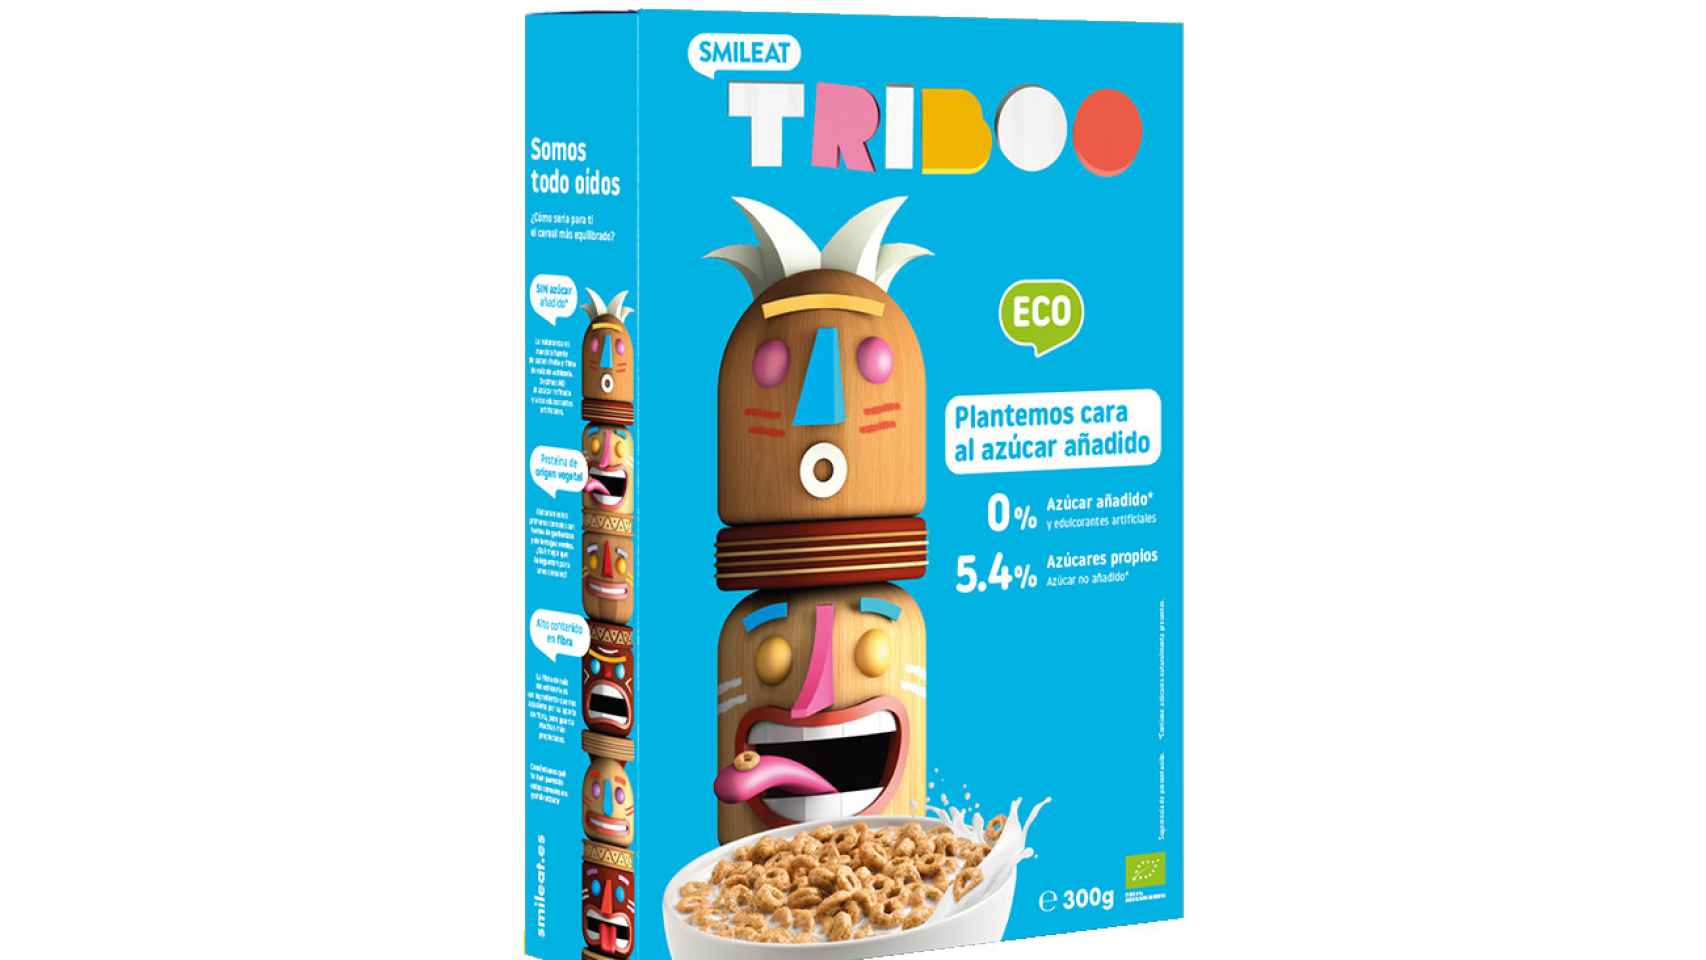 Cereales TRIBOO, uno de los productos estrella de la marca.